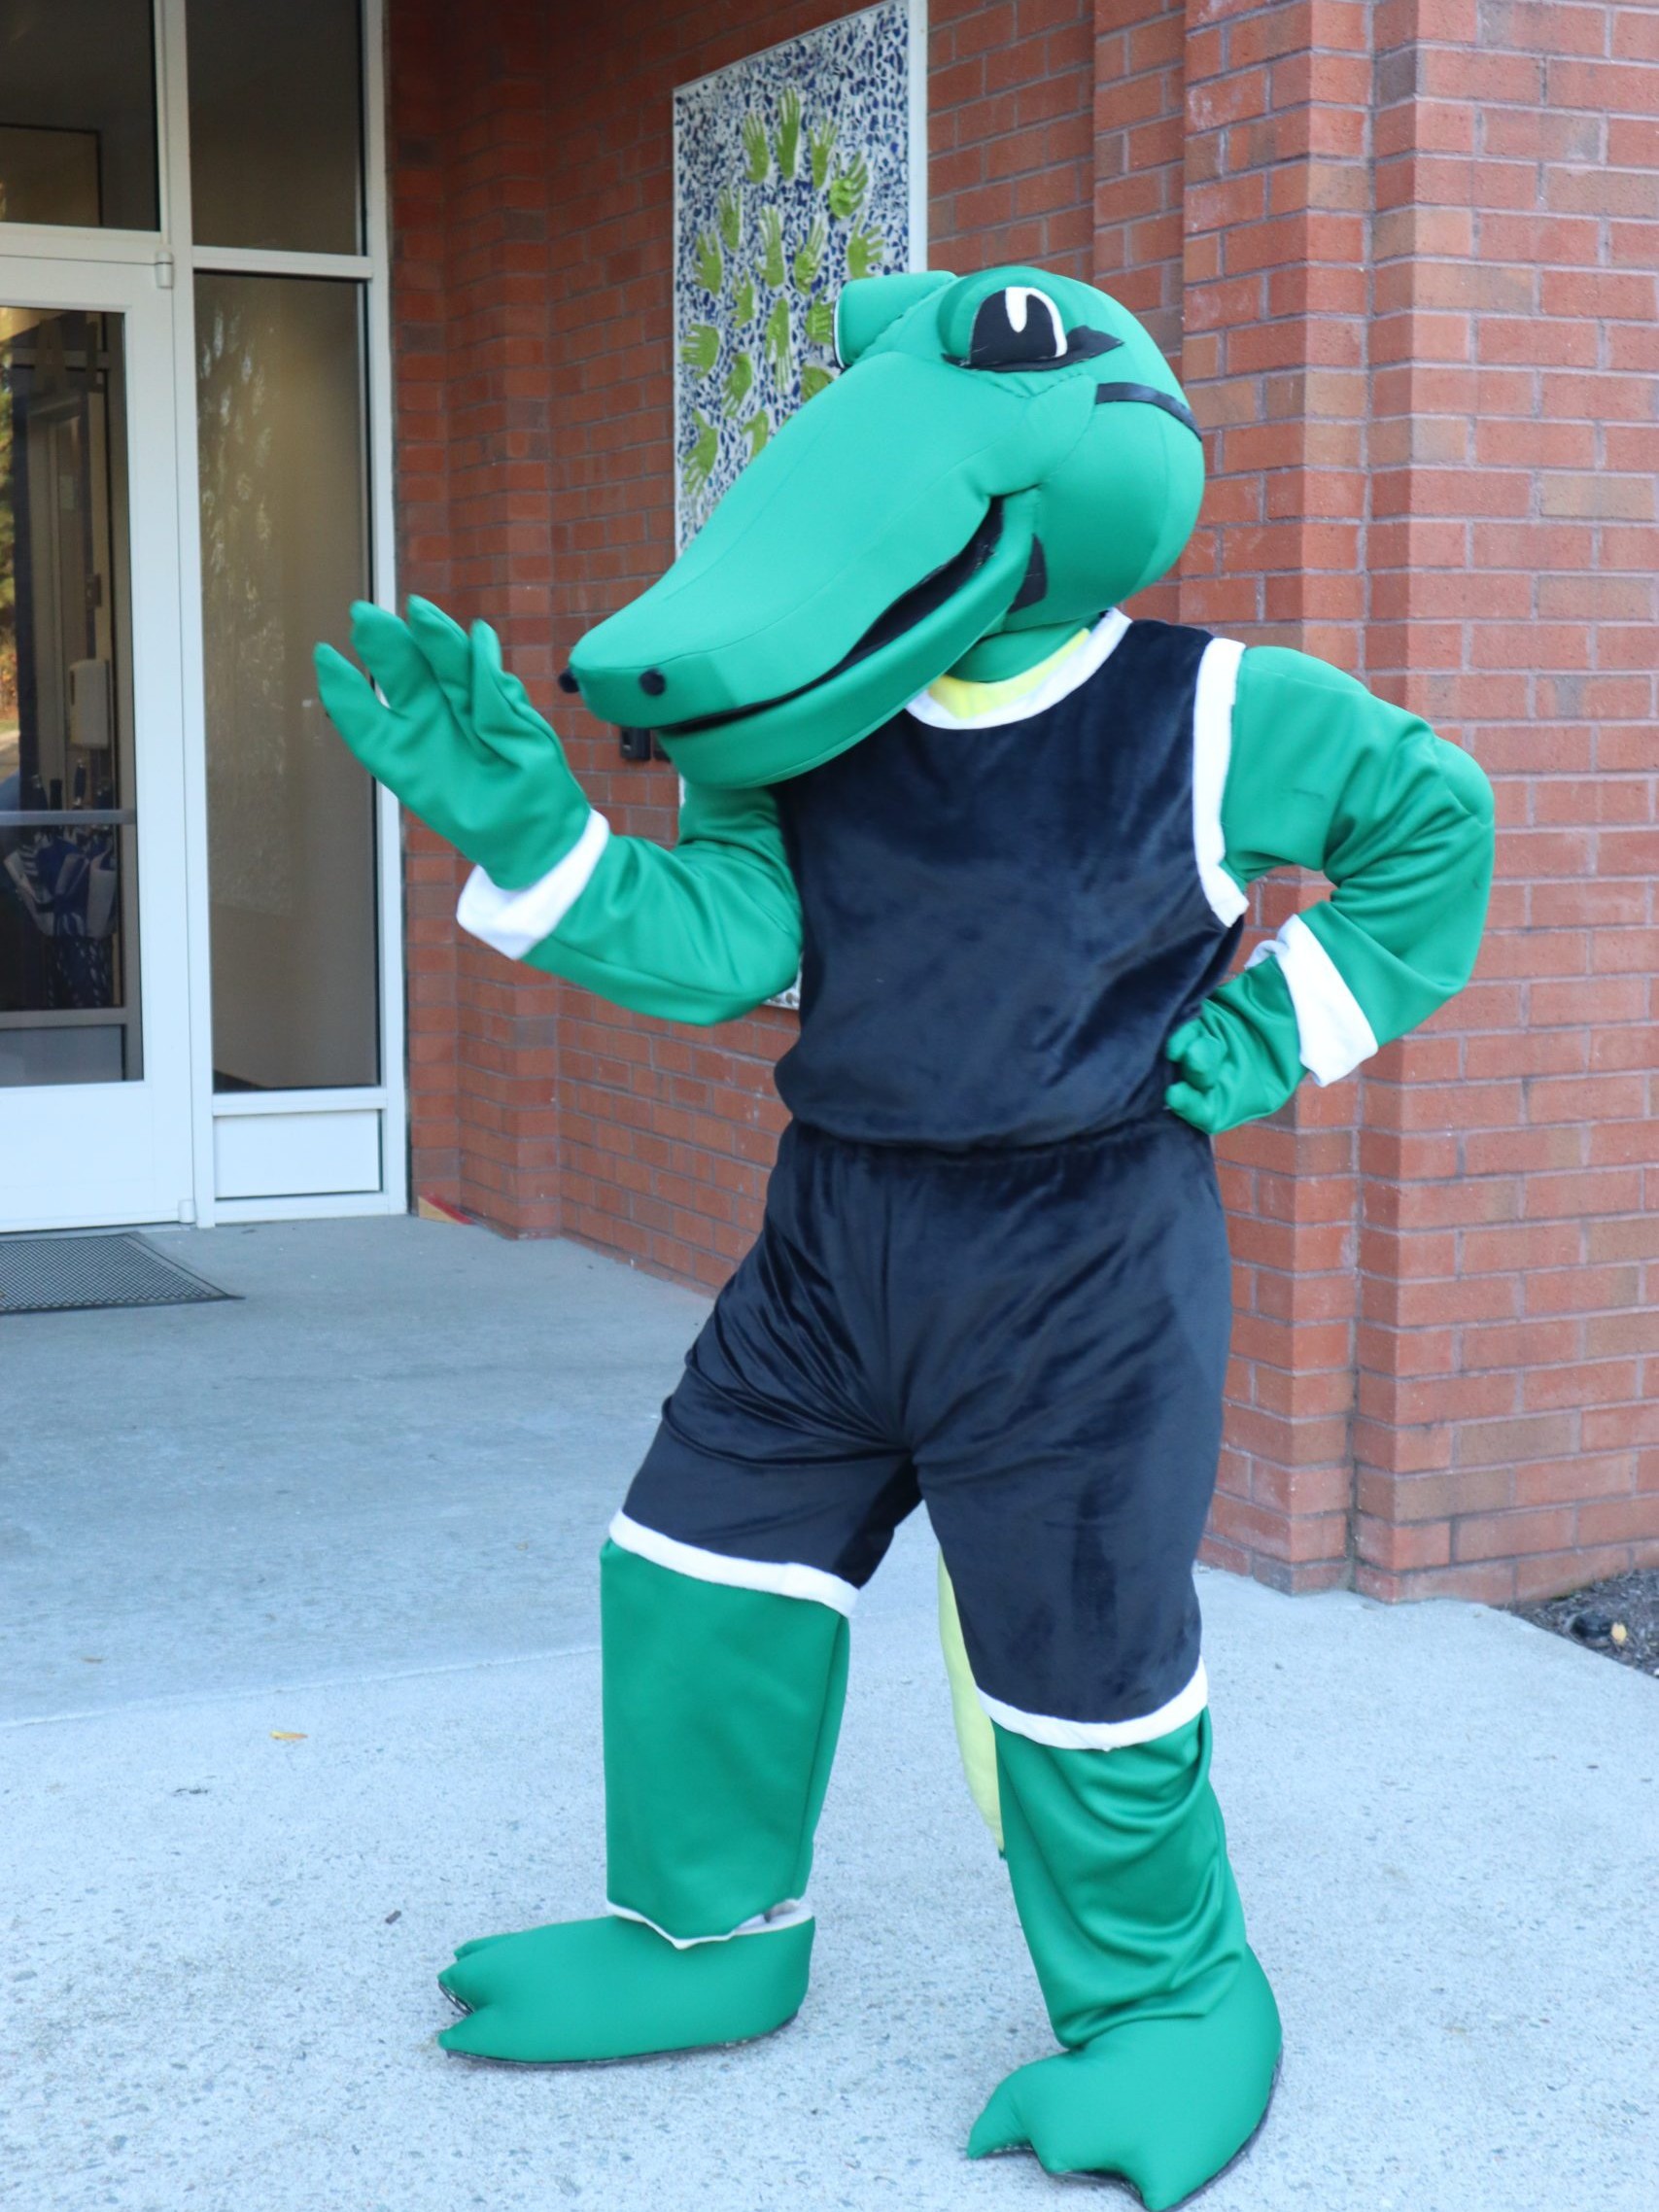 Navi (alligator mascot) waving in front of school building